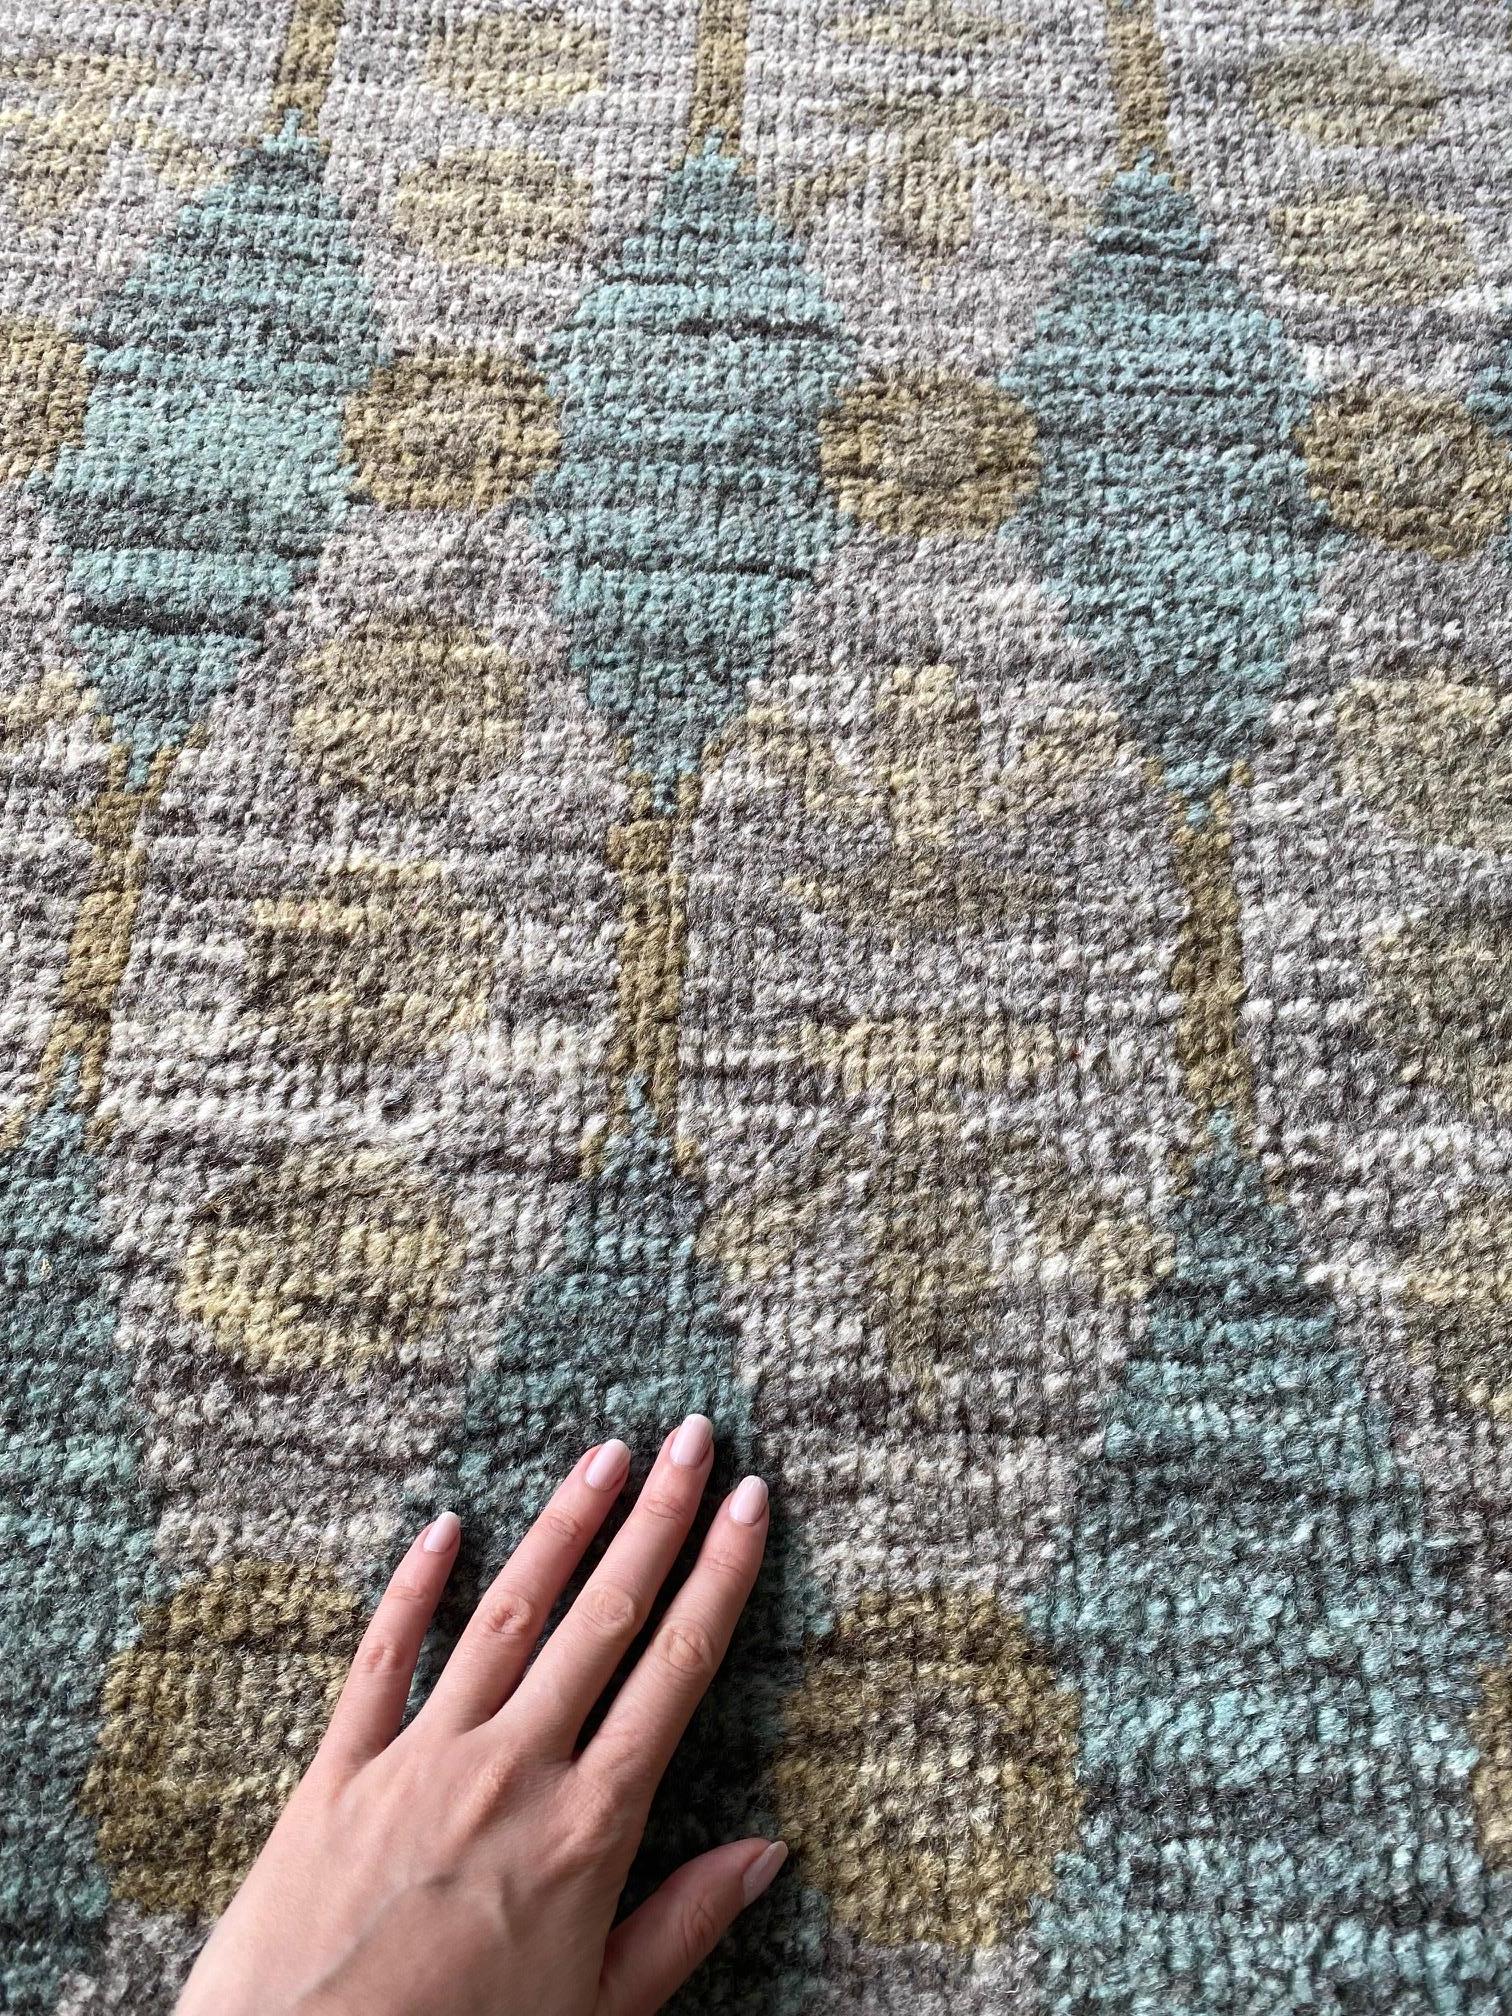 Zeitgenössischer ägäisgrüner handgefertigter Teppich von Bunny Williams für Doris Leslie Blau.
Größe: 11'8